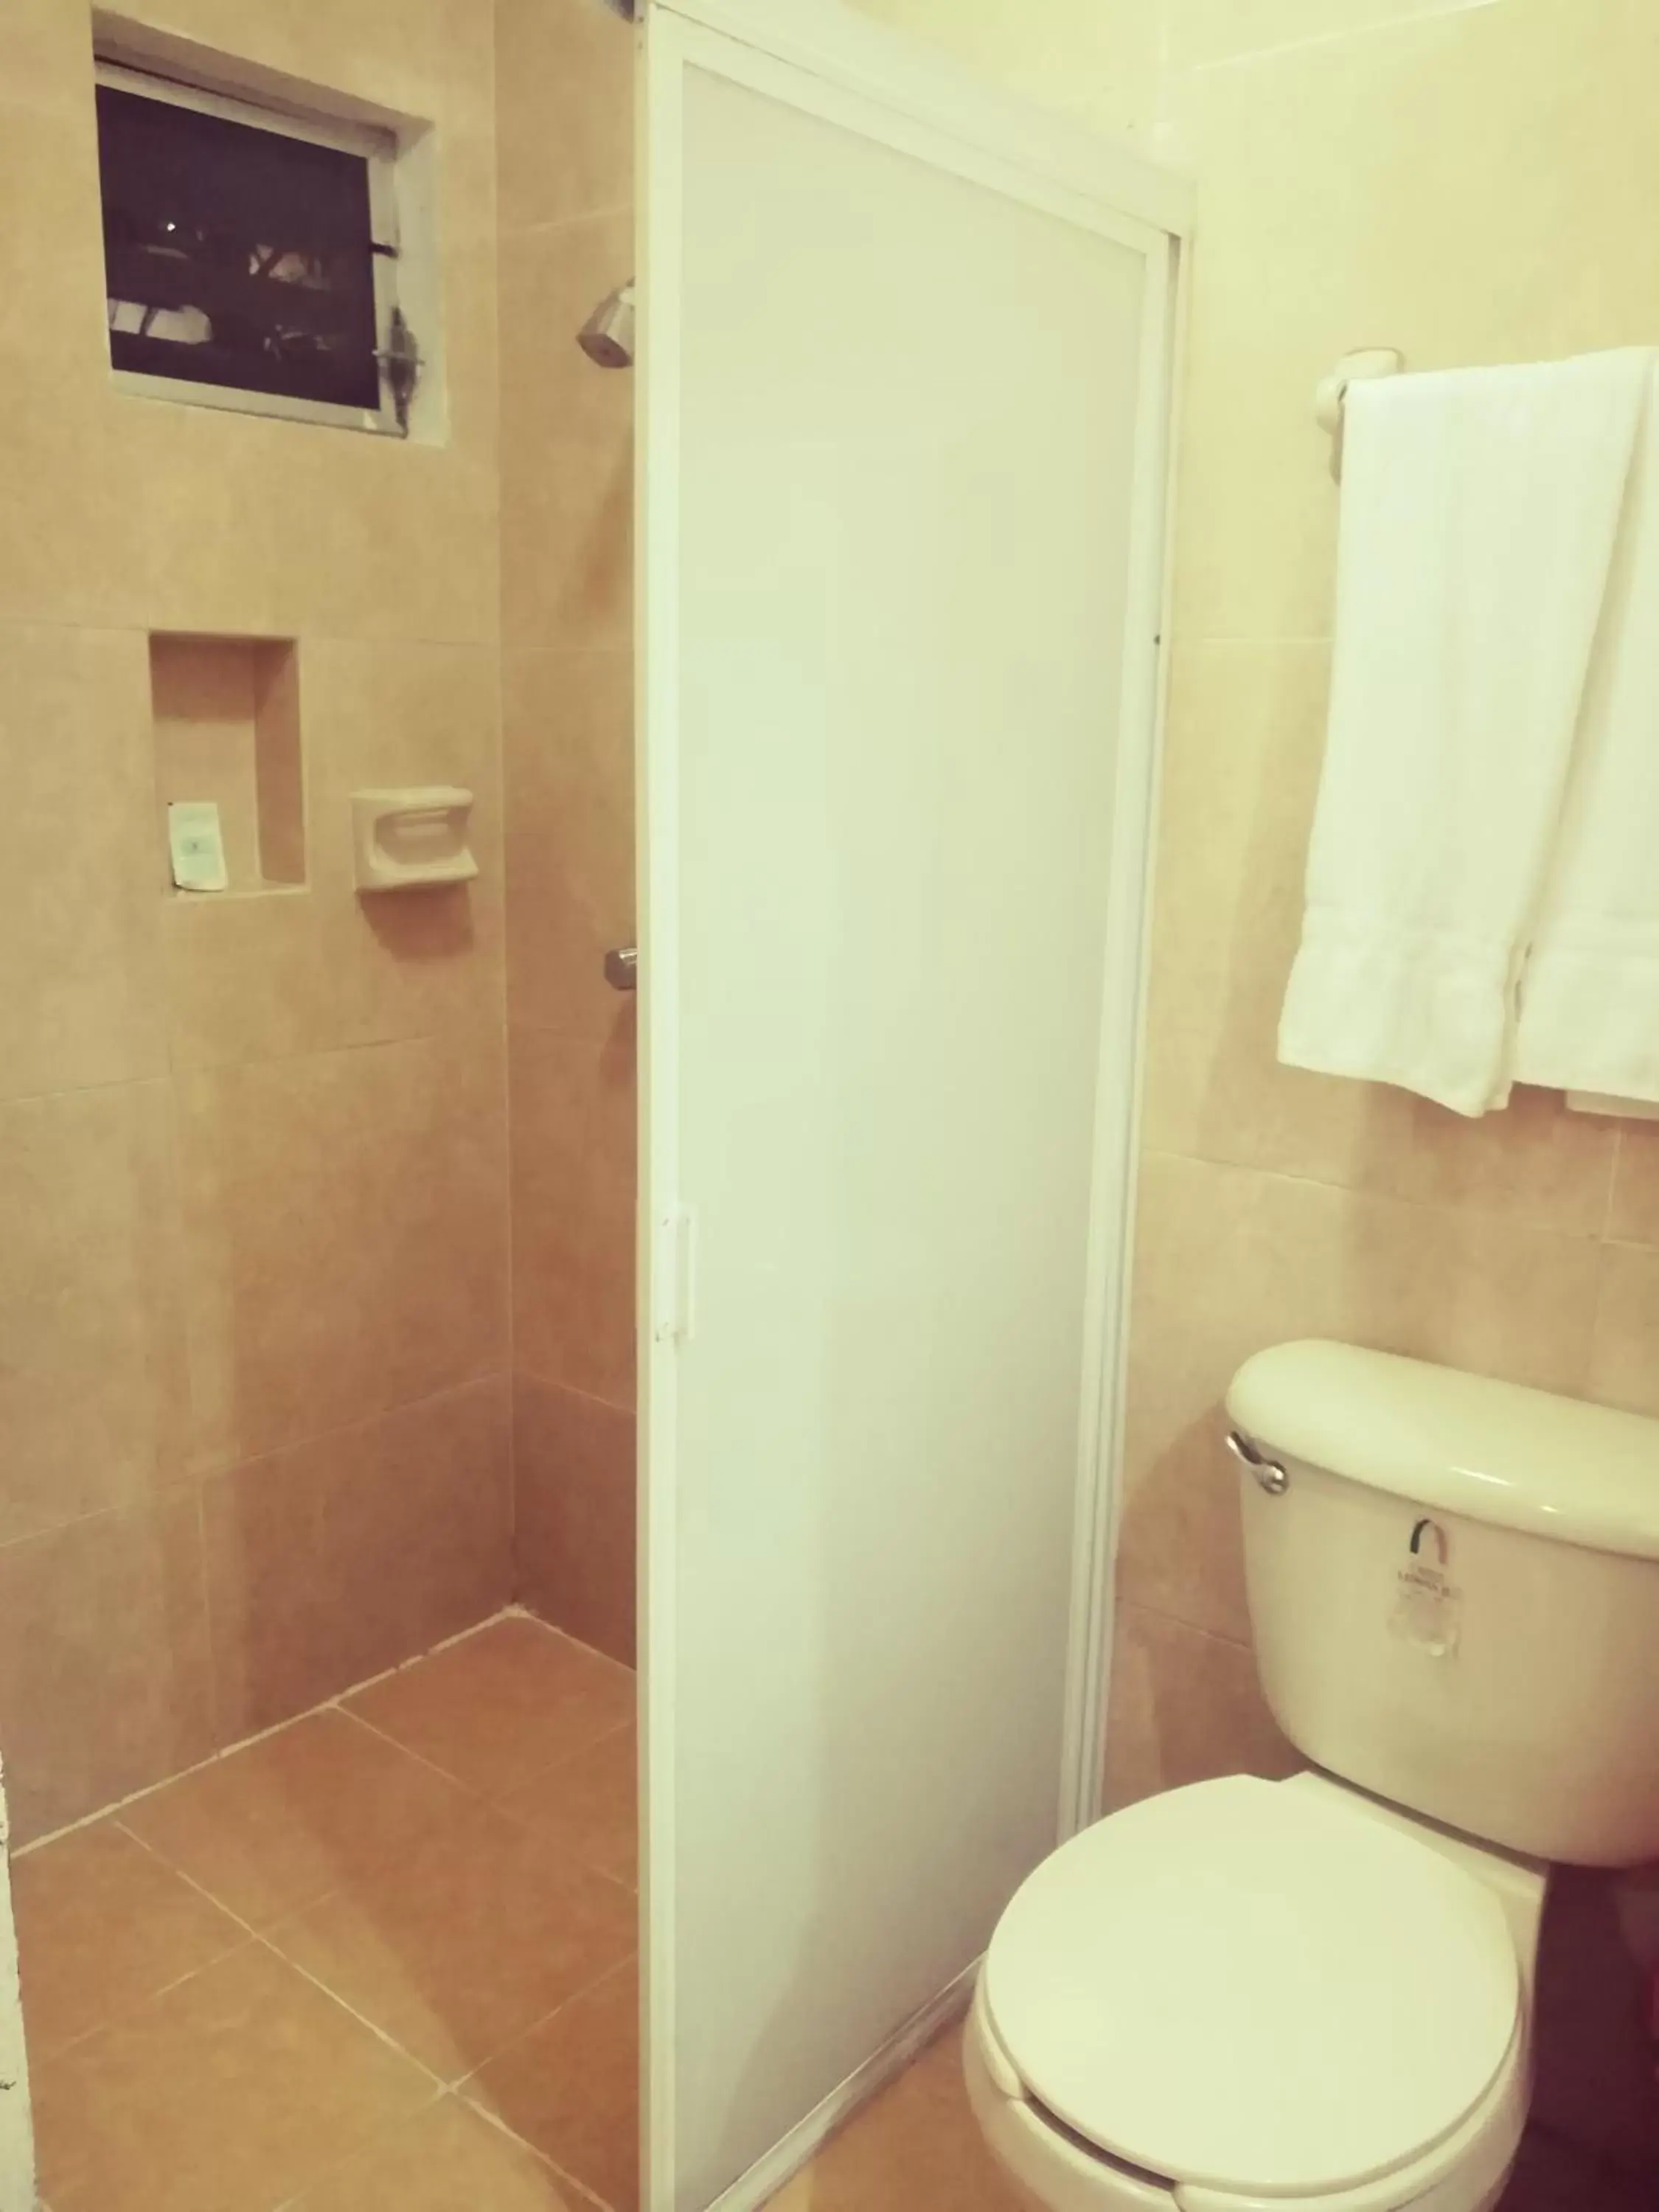 Bathroom in Hotel El Marques